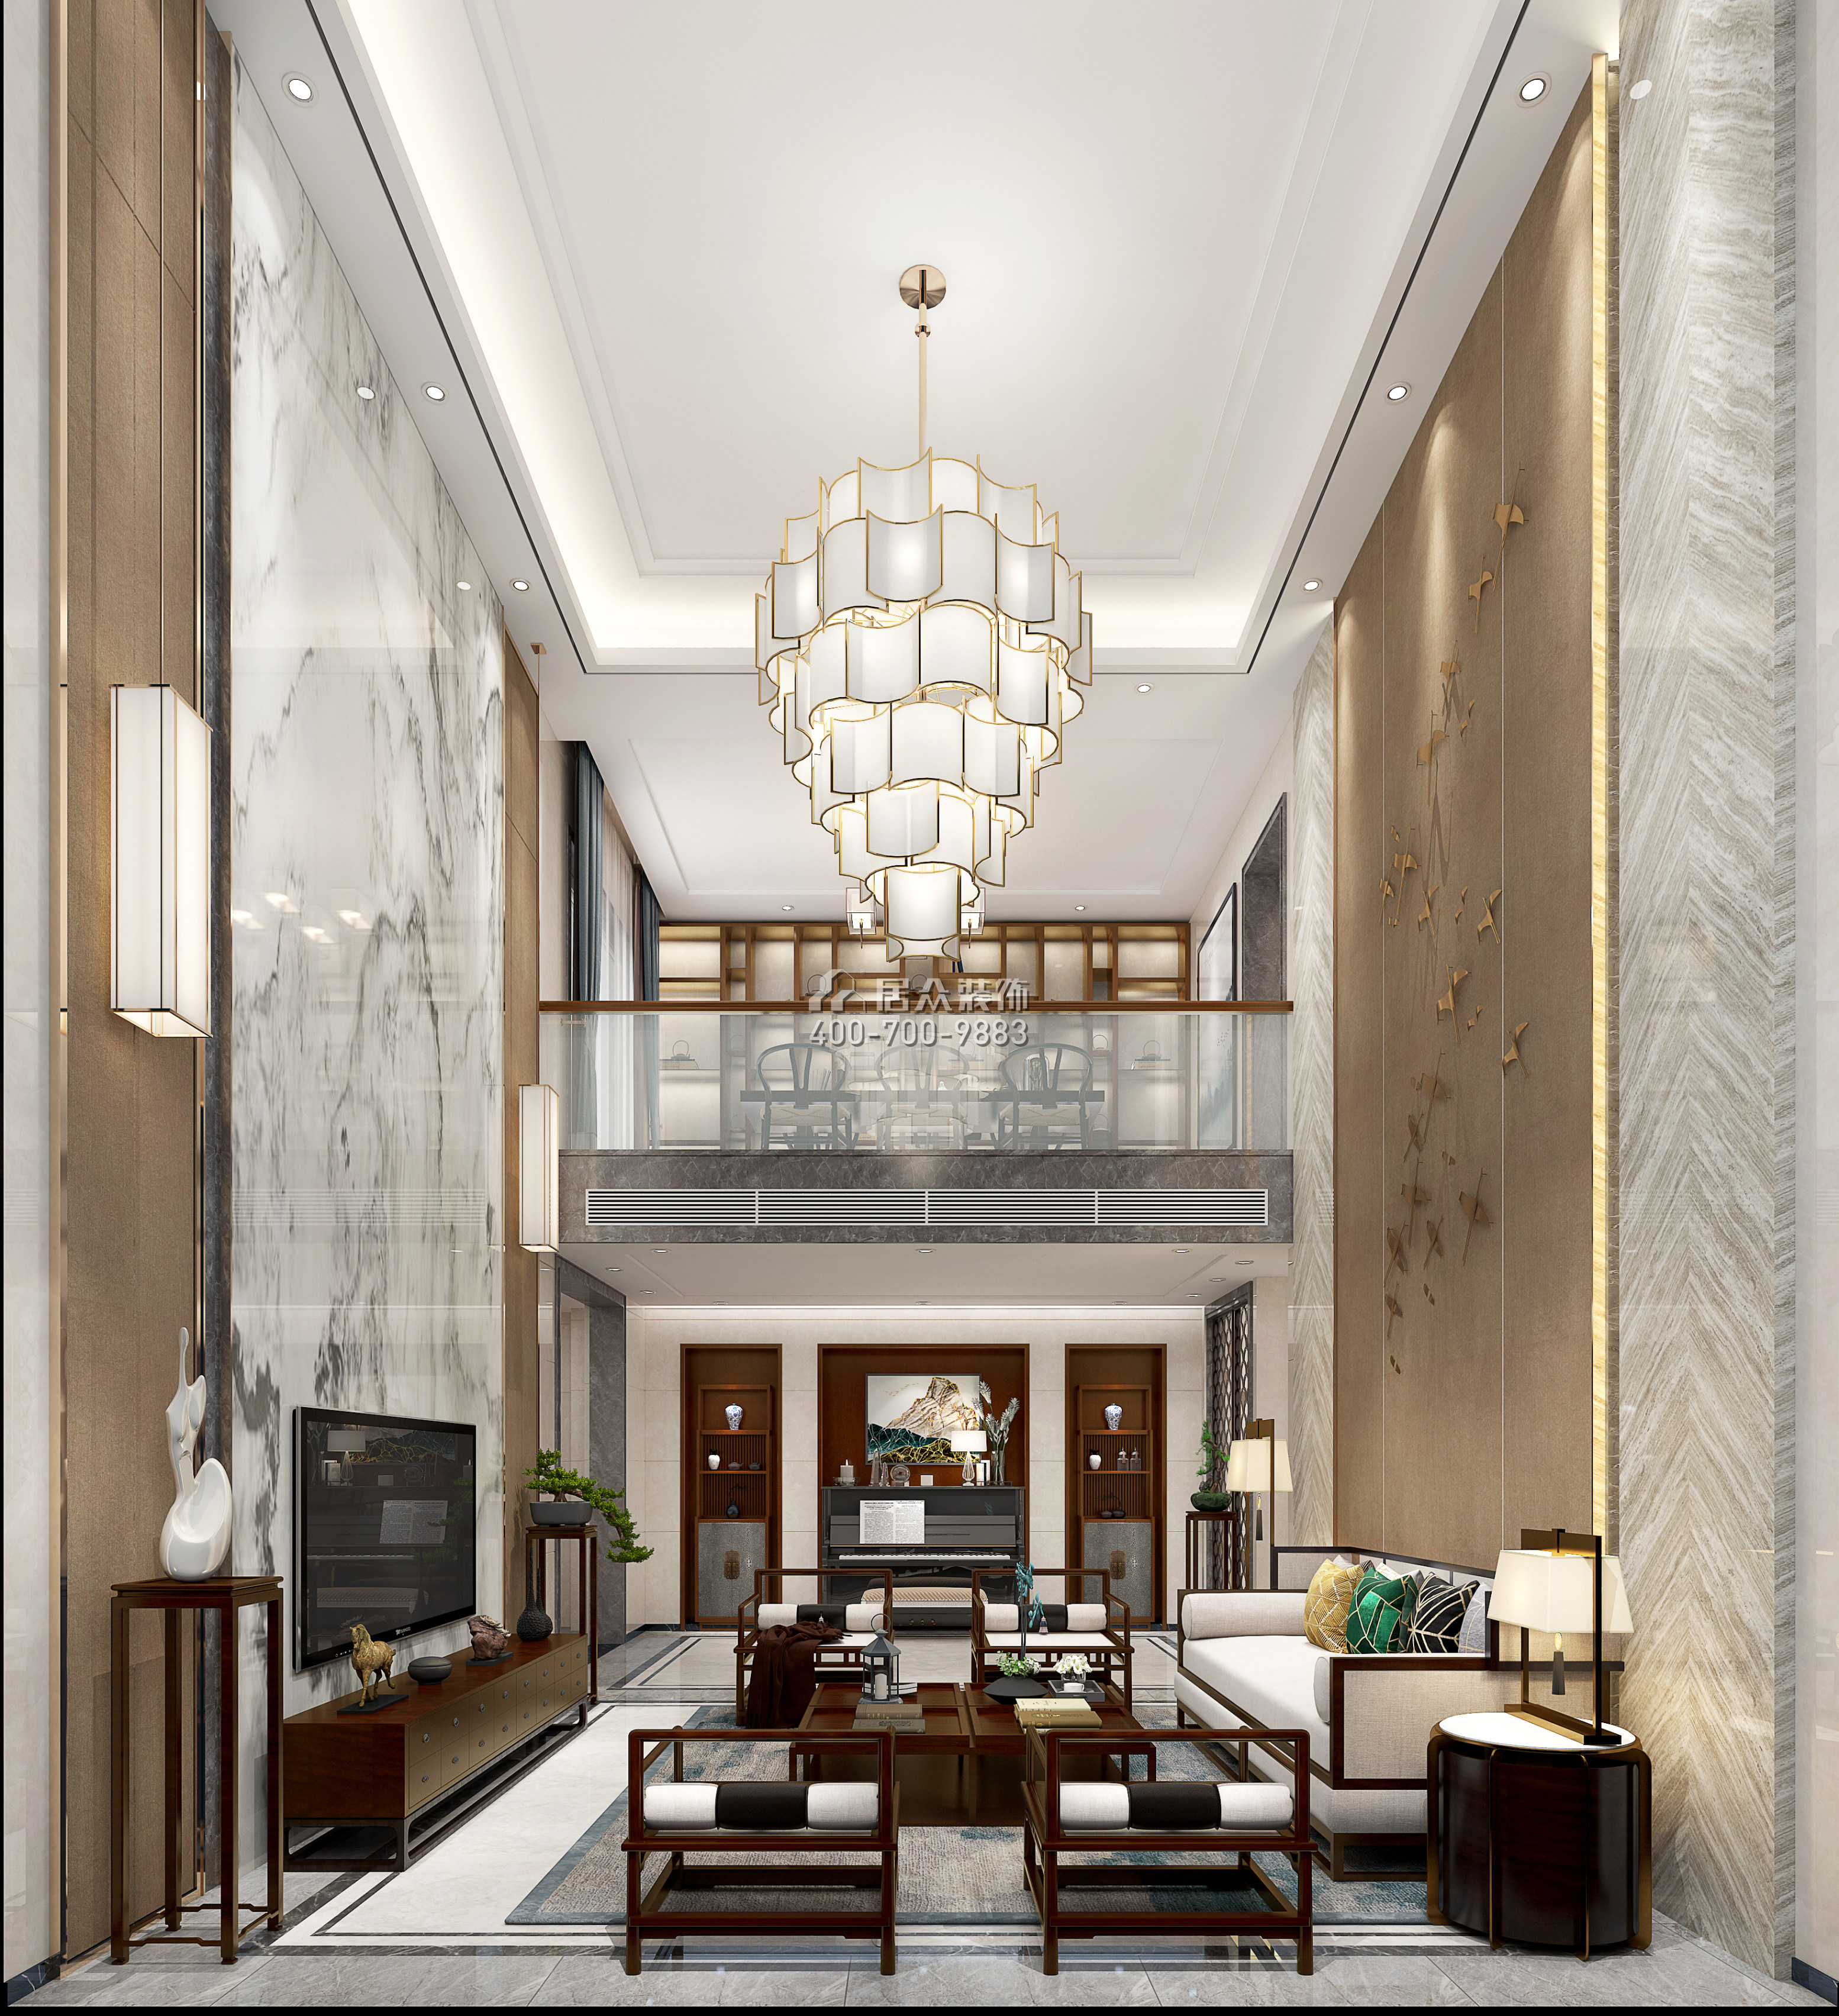 丽水佳园390平方米中式风格3户型客厅装修效果图